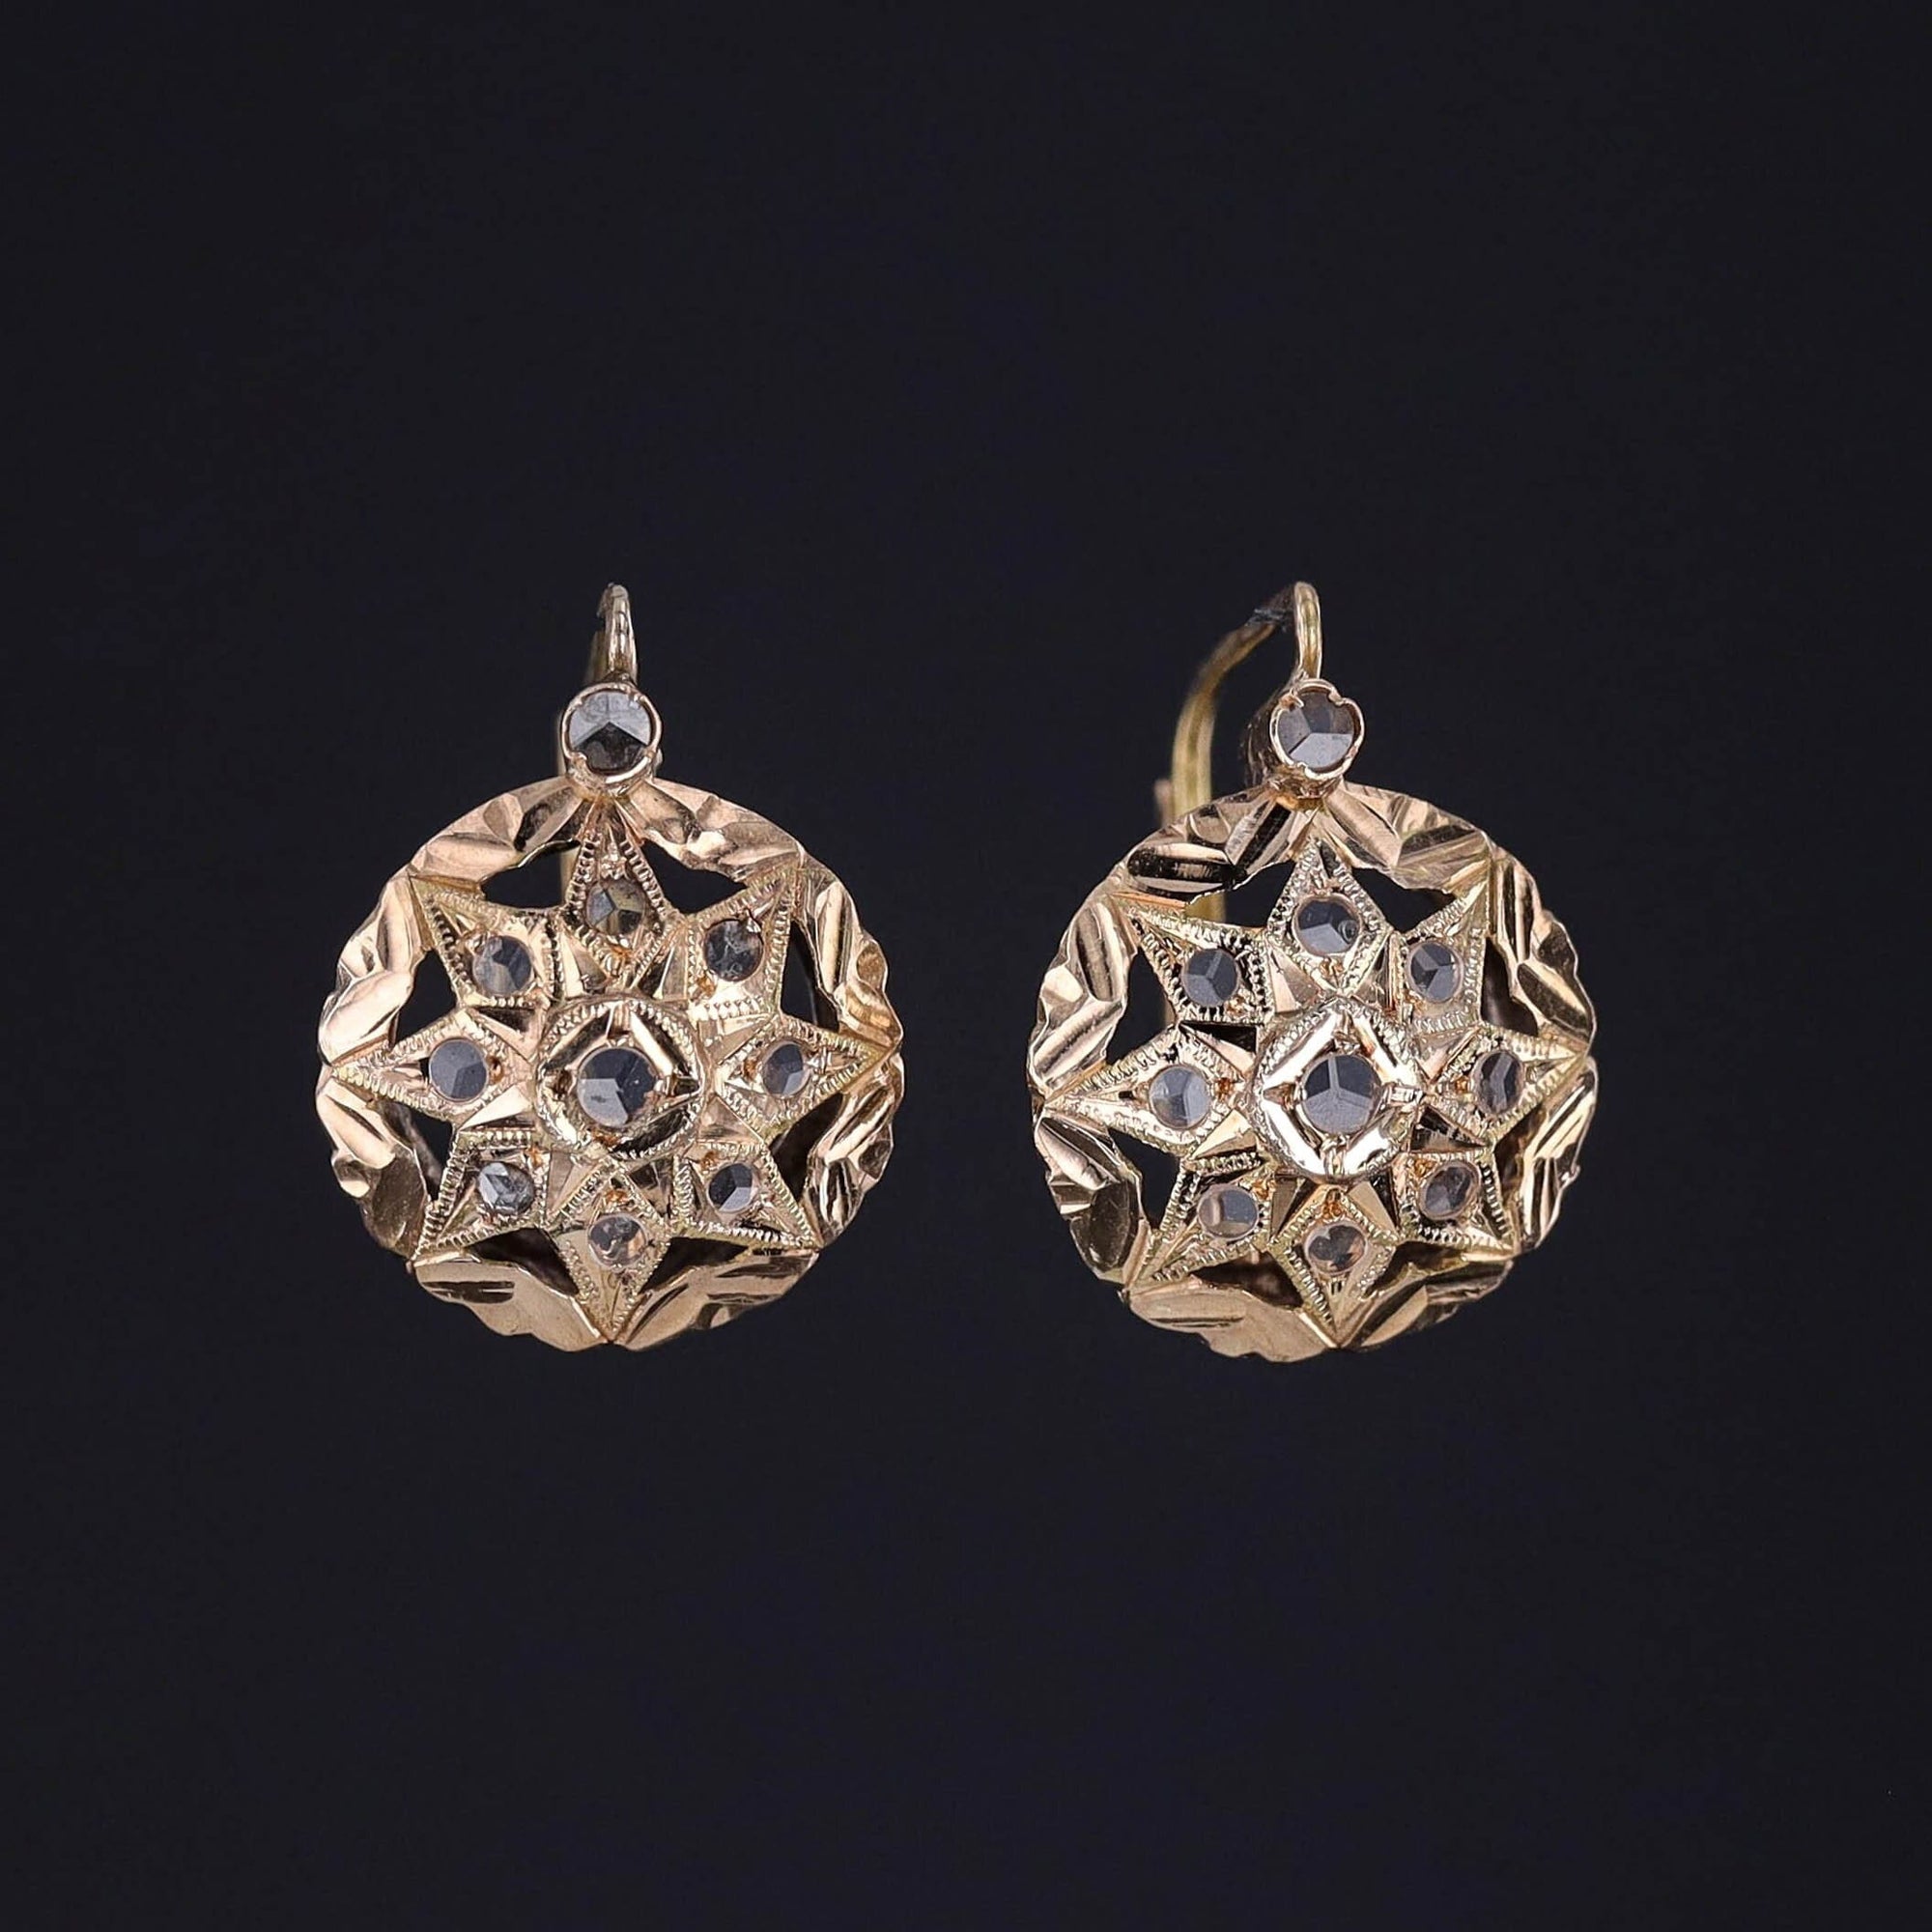 Antique Topaz Earrings of 14k Gold